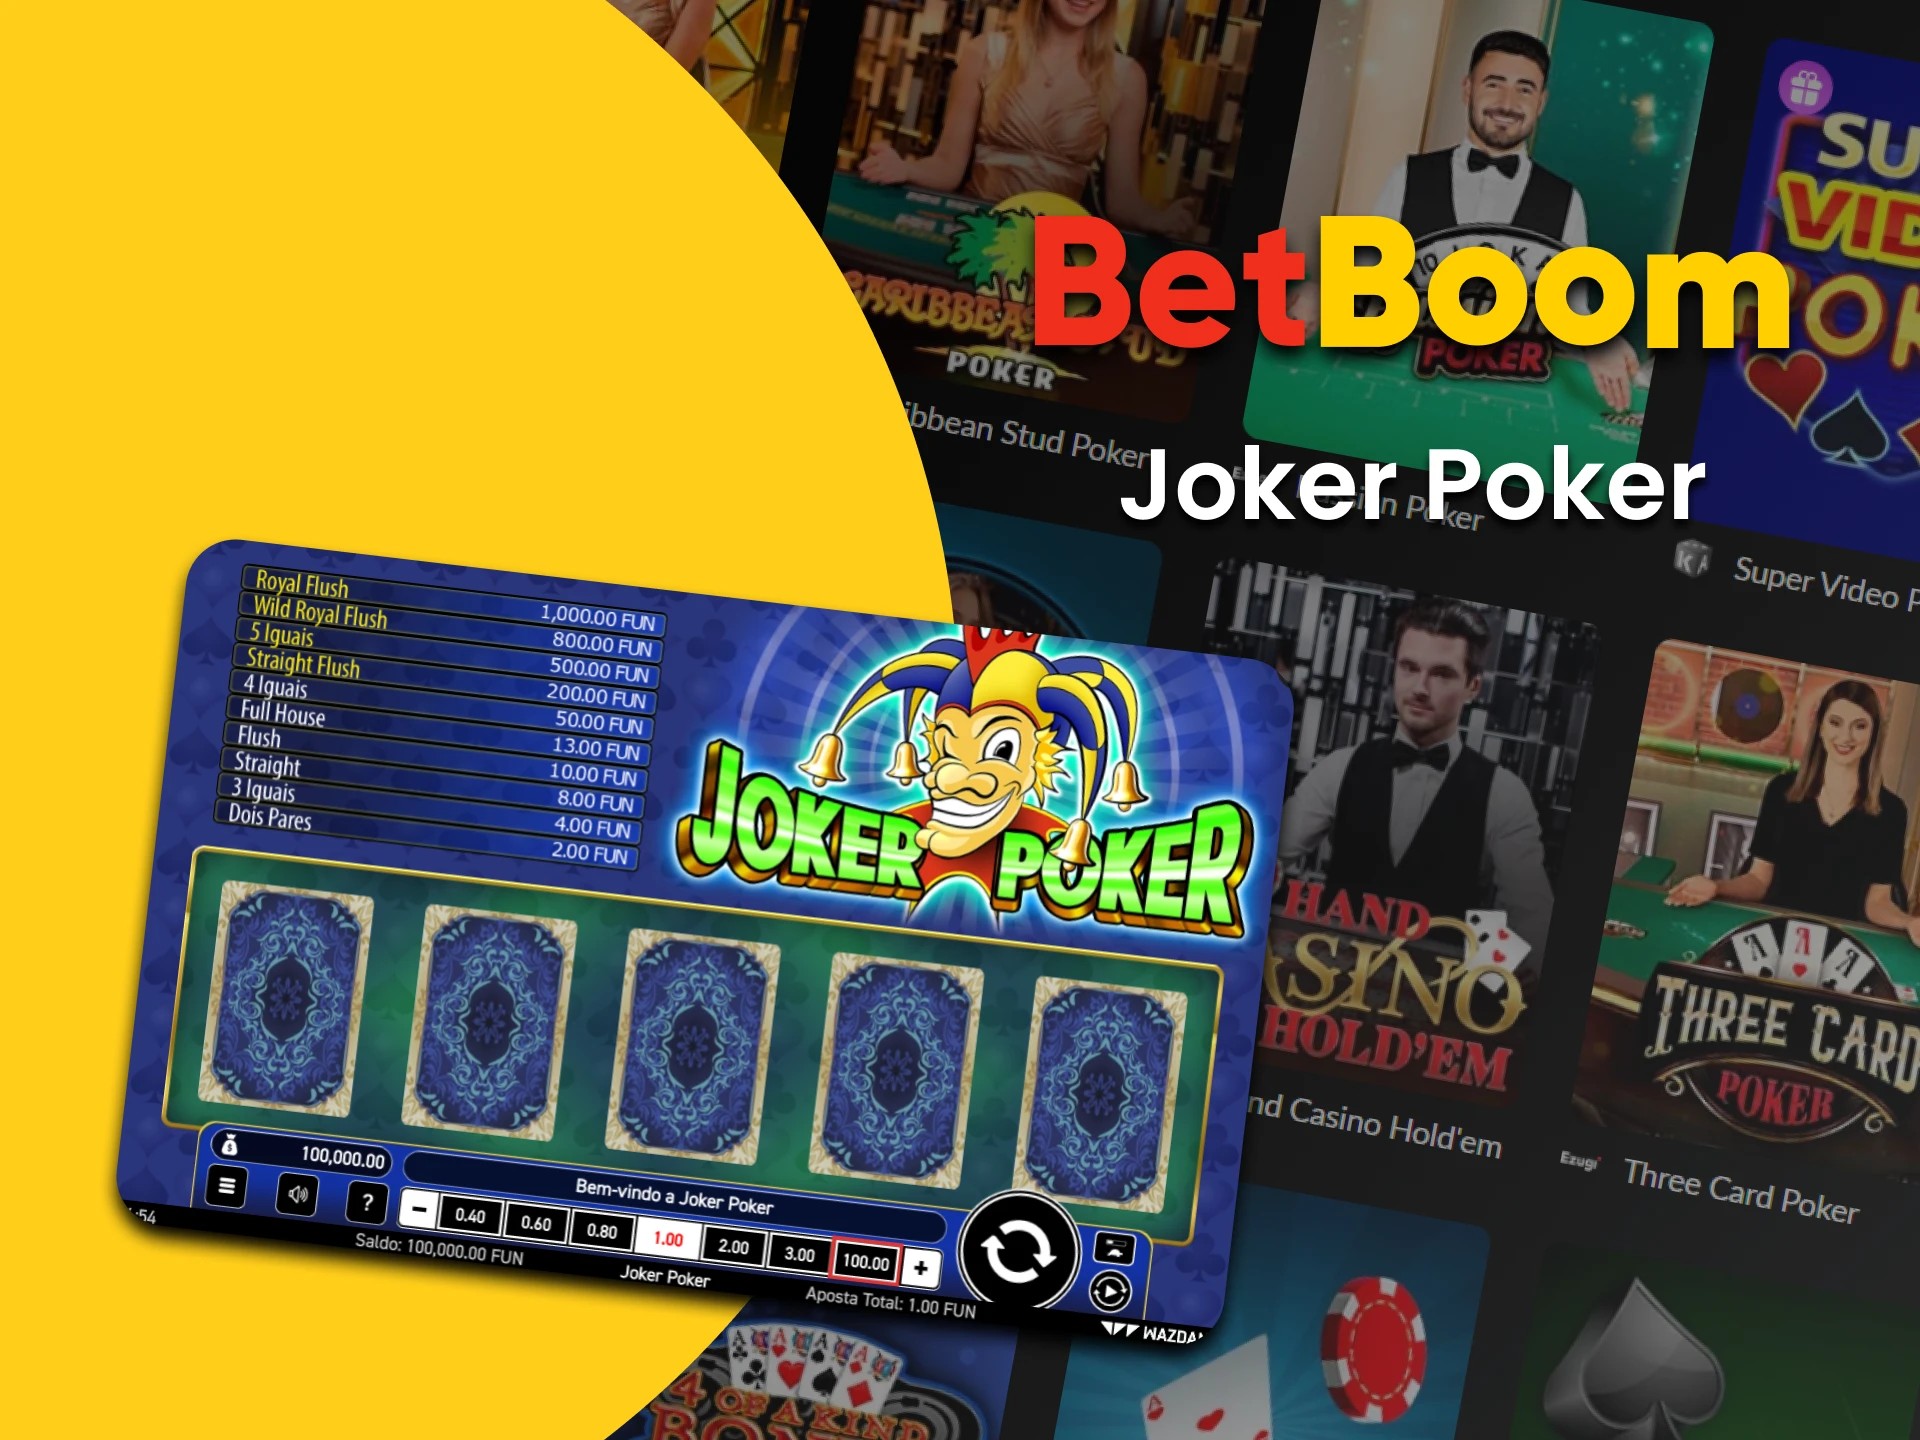 Vá para a seção de pôquer para jogar Joker Poker.